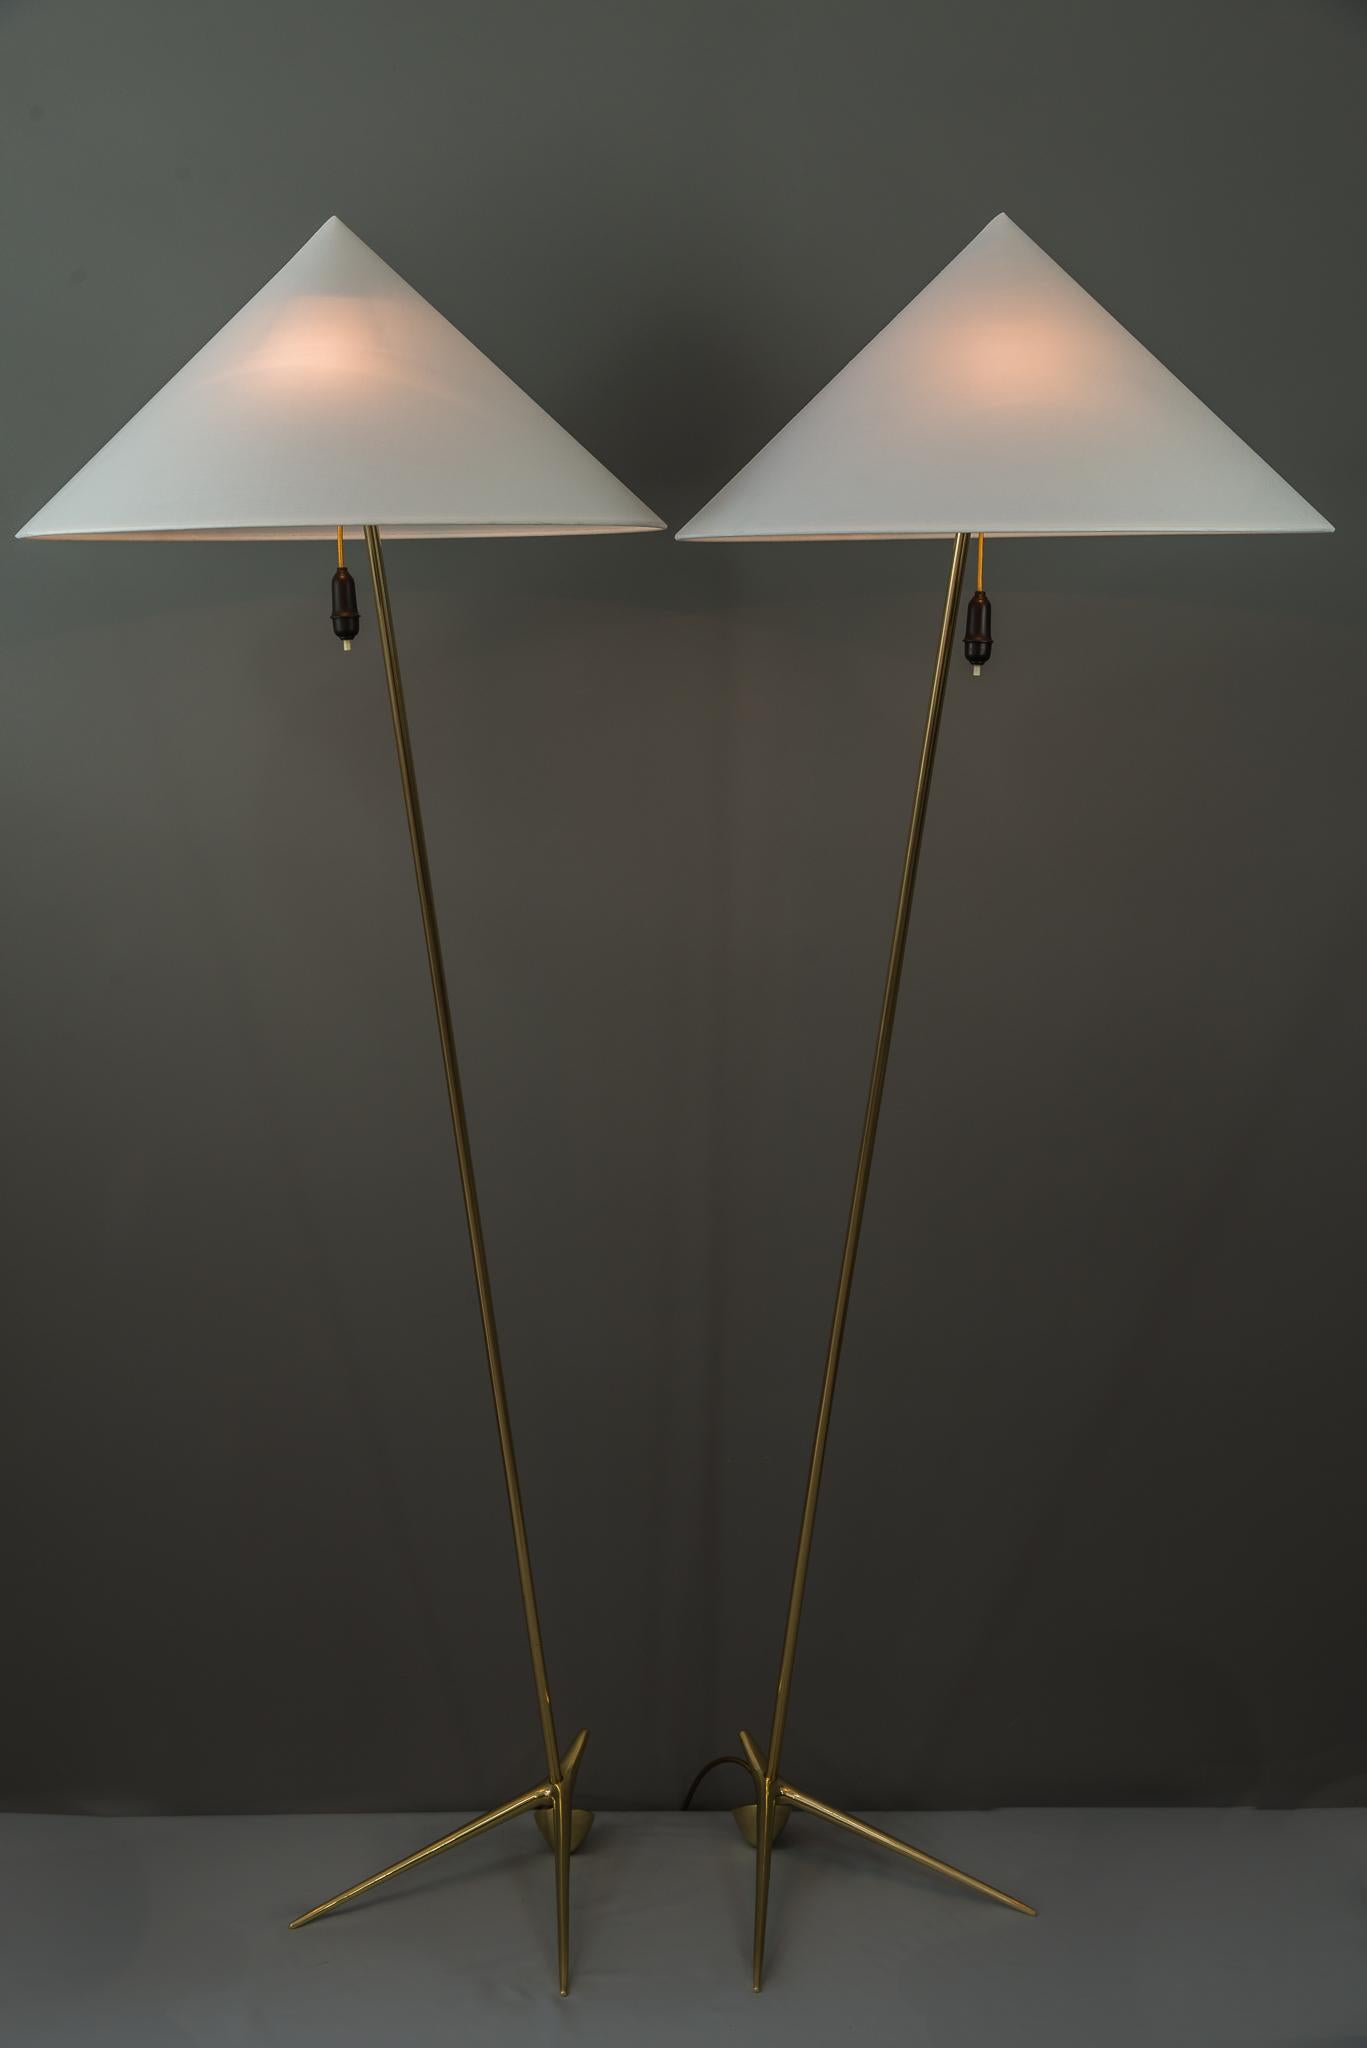 Zwei charmante Golf-Stehlampen, entworfen von Rupert Nikoll, Wien, 1950
Auch die Lampenschirme wurden auf der Grundlage der Originalmaße erneuert.
Poliert und einbrennlackiert
Preis des Paares.